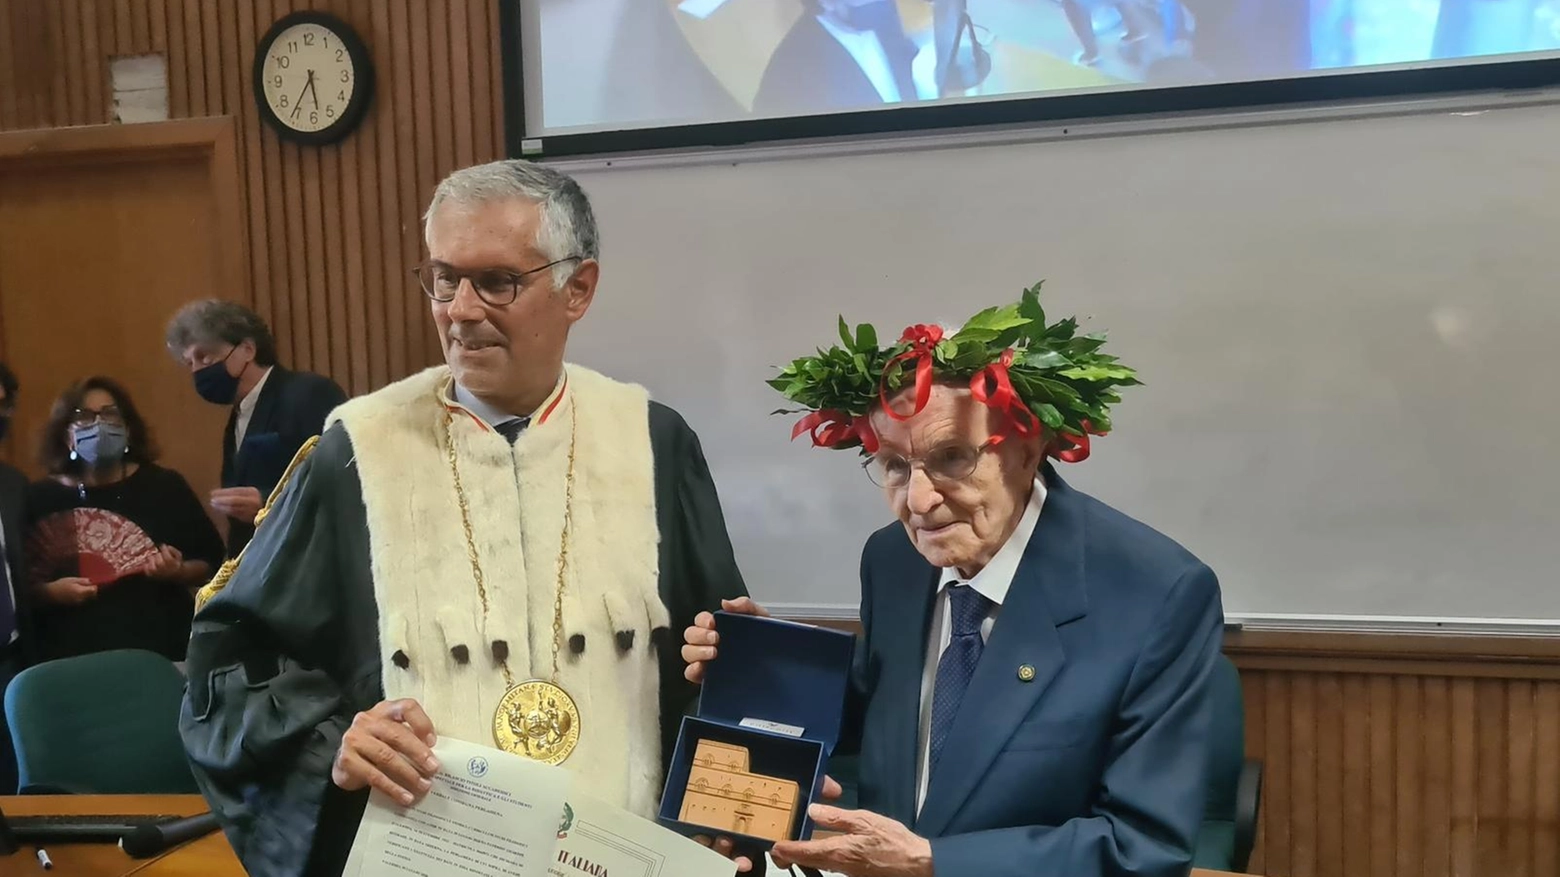 Giuseppe Paternò si laurea a 97 anni (Dire)